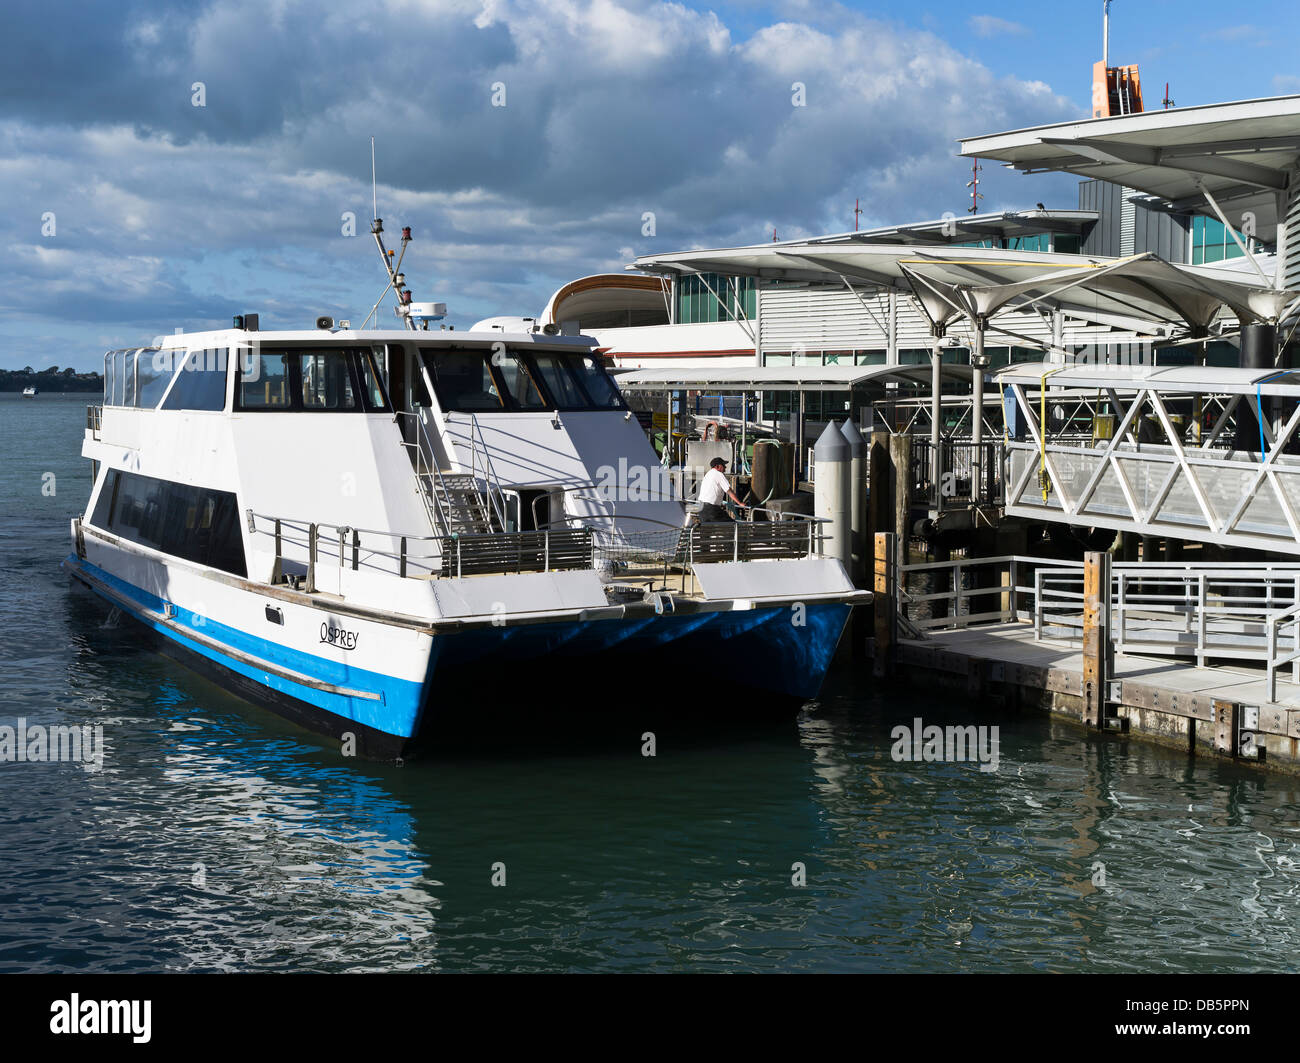 Dh Le port d'Auckland Auckland NOUVELLE ZÉLANDE osprey catamaran de croisière à bord de charters auckland ferry Banque D'Images